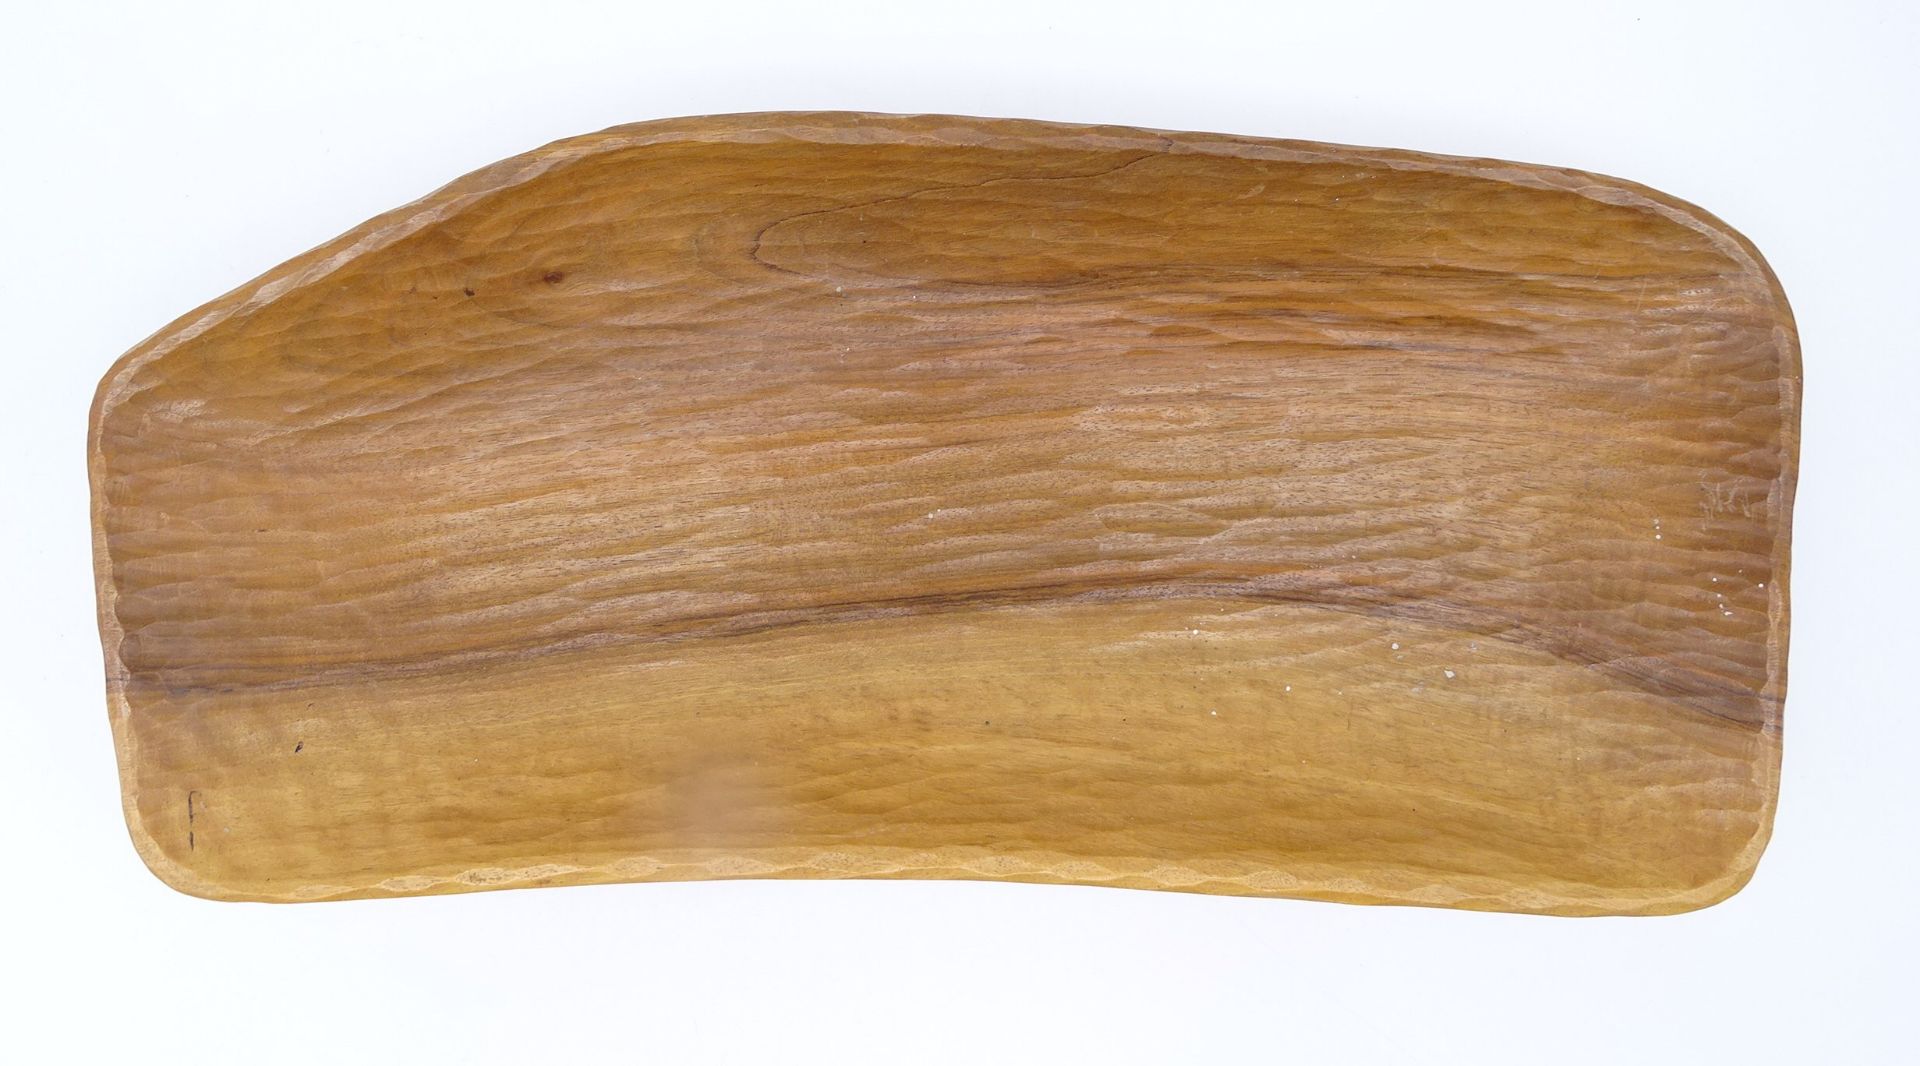 Holzschale, Handarbeit, 41 x 18 x 5 cm, leichte Altersspuren